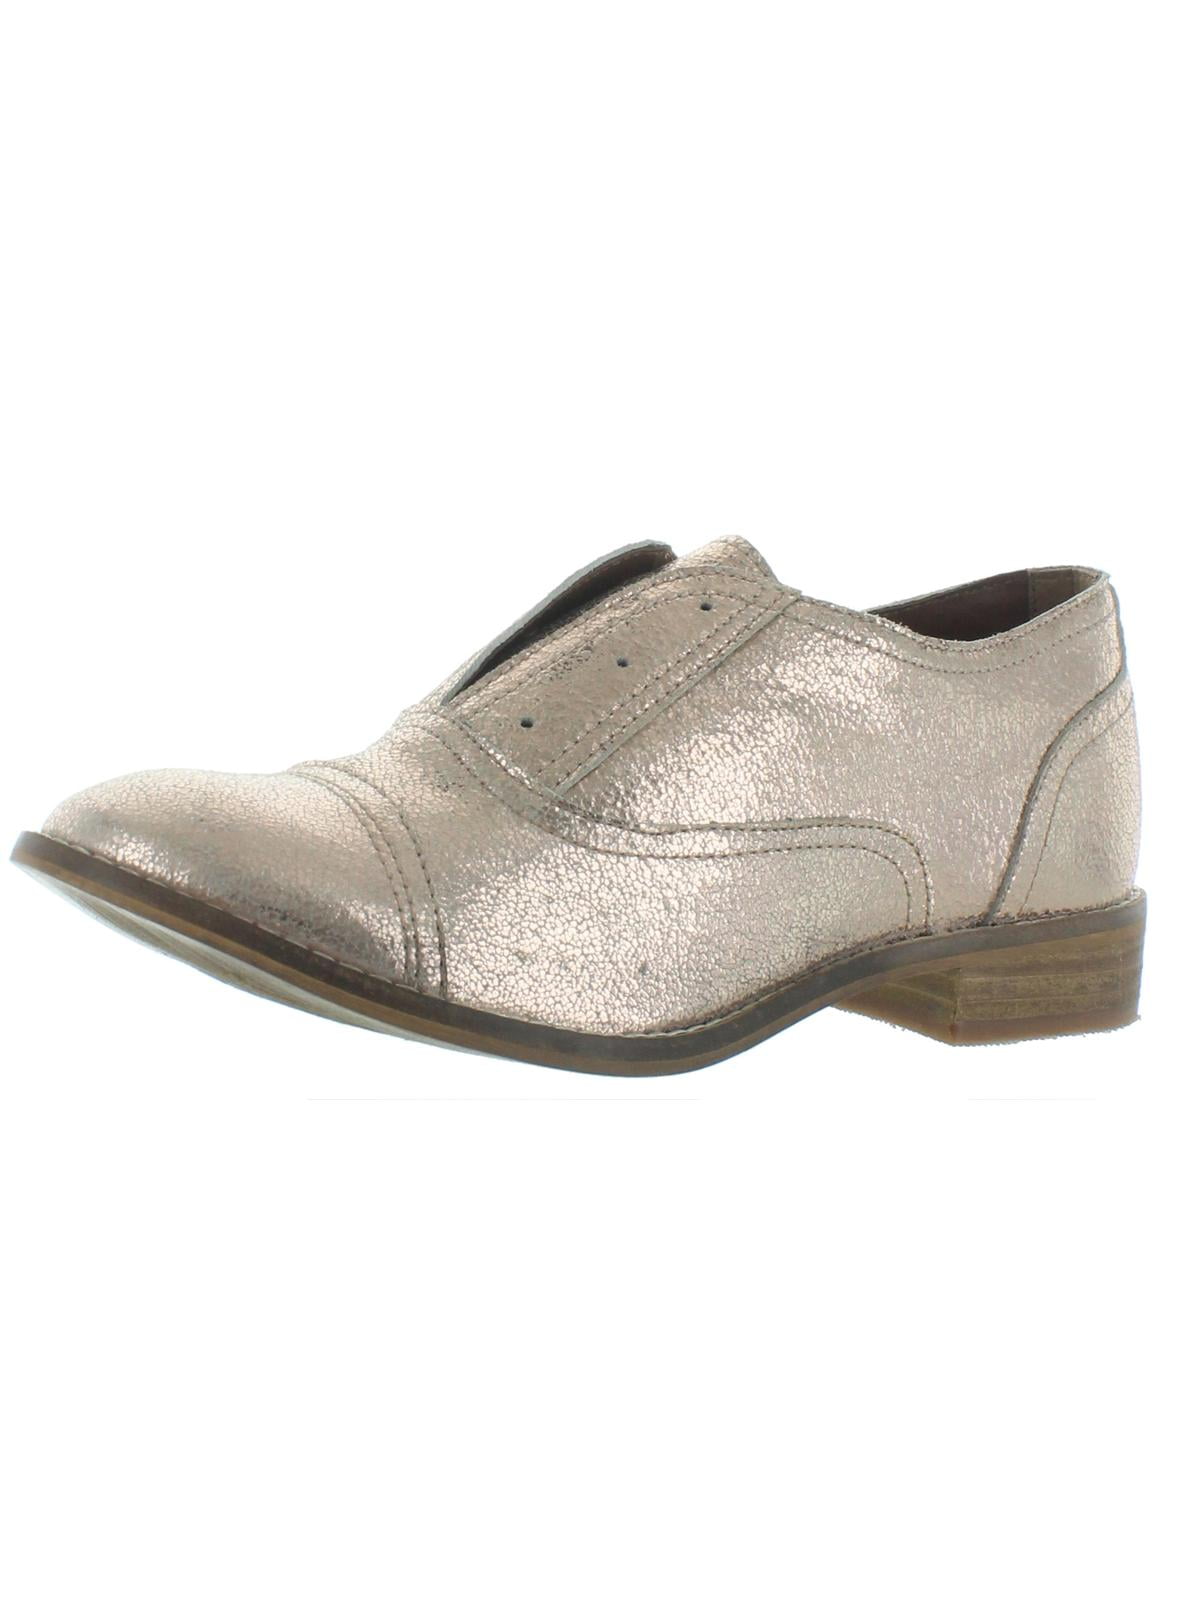 51933-40 Rieker Womens Leather Brogue Grey Combi Shoe